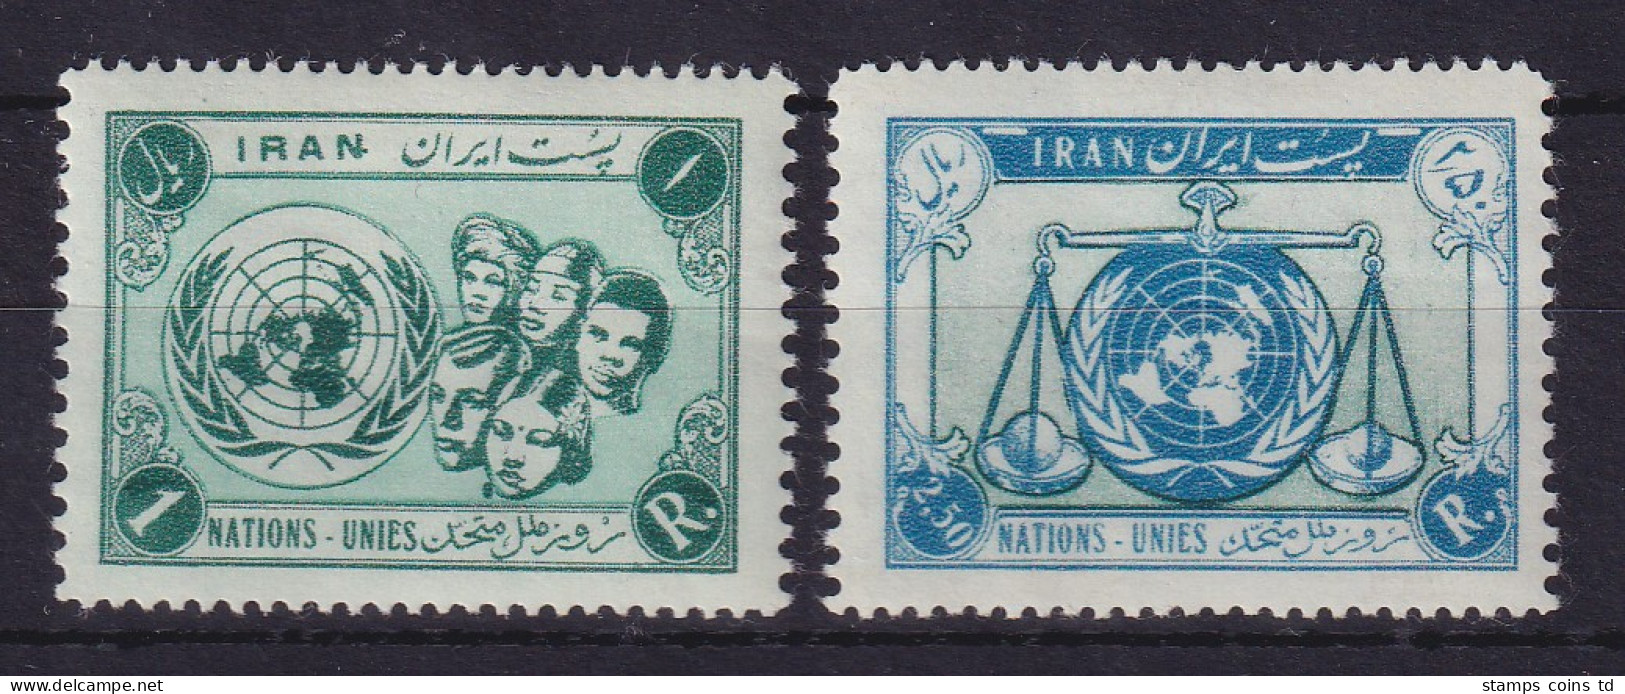 Iran 1956 Vereinte Nationen Mi.-Nr. 970-971 Postfrisch **  - Iran